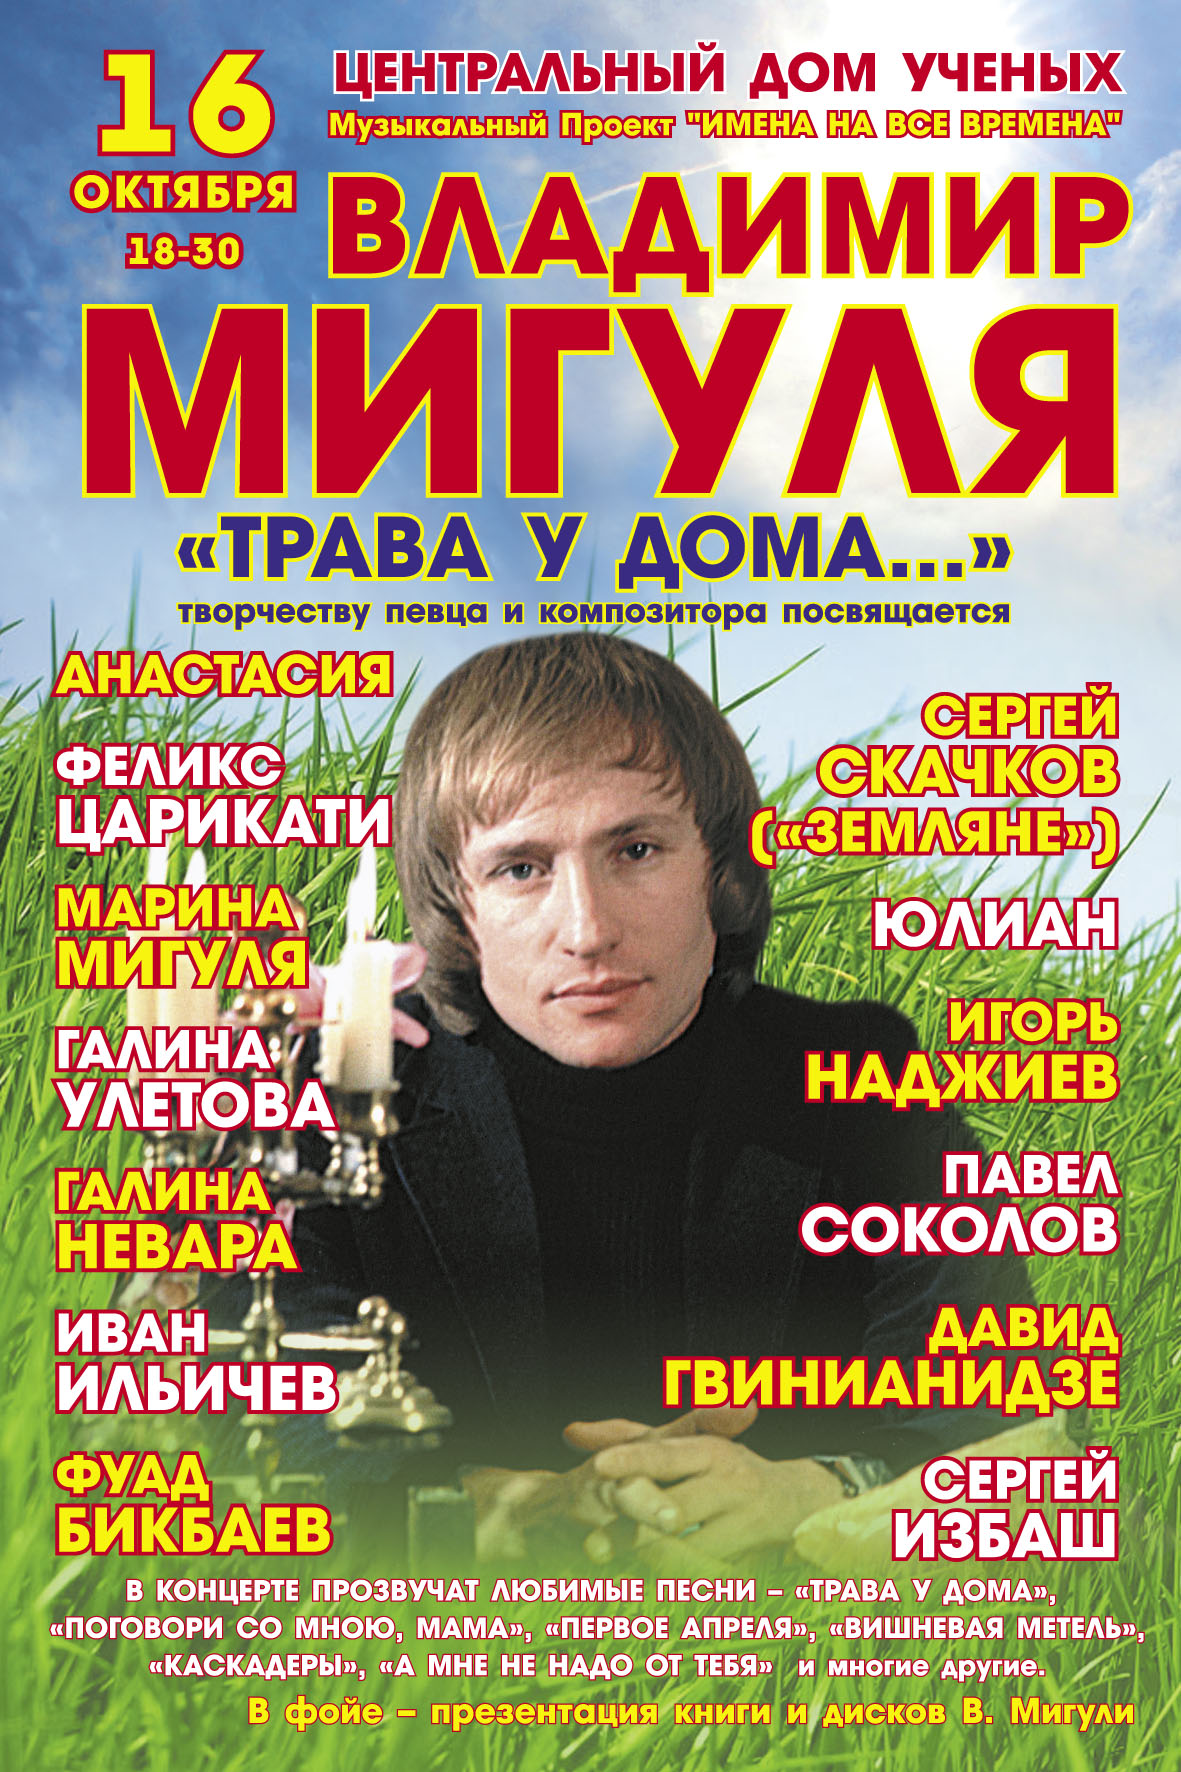  Афиша концерта памяти композитора 16 октября 2009 г. в ЦДУ (http://neboqitel.narod.ru)